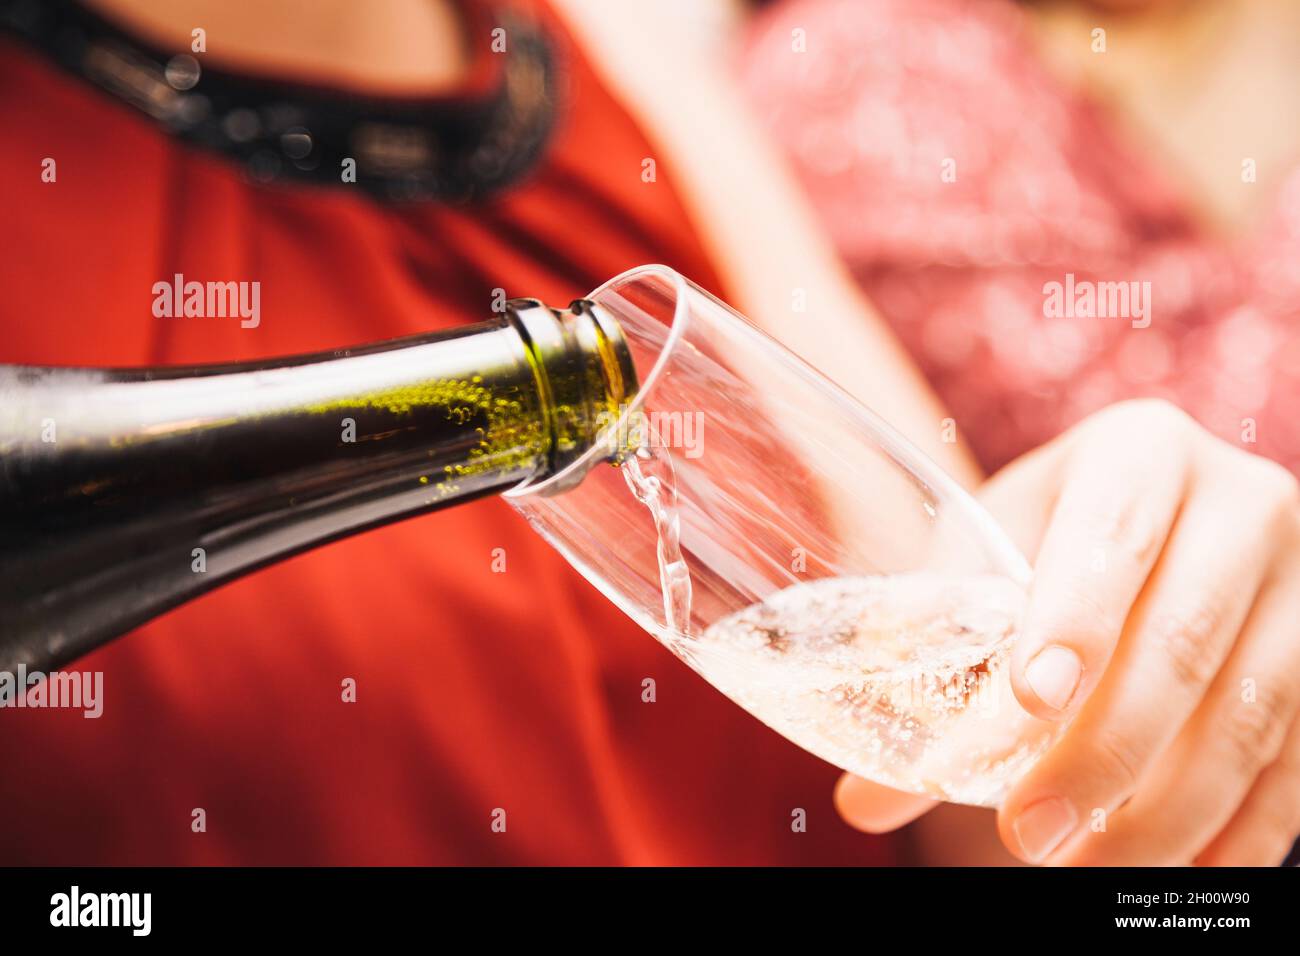 Le mani di una donna sconosciuta che indossa un vestito rosso che tiene un bicchiere mentre lo riempie di Cava da una bottiglia di vetro verde. Foto Stock